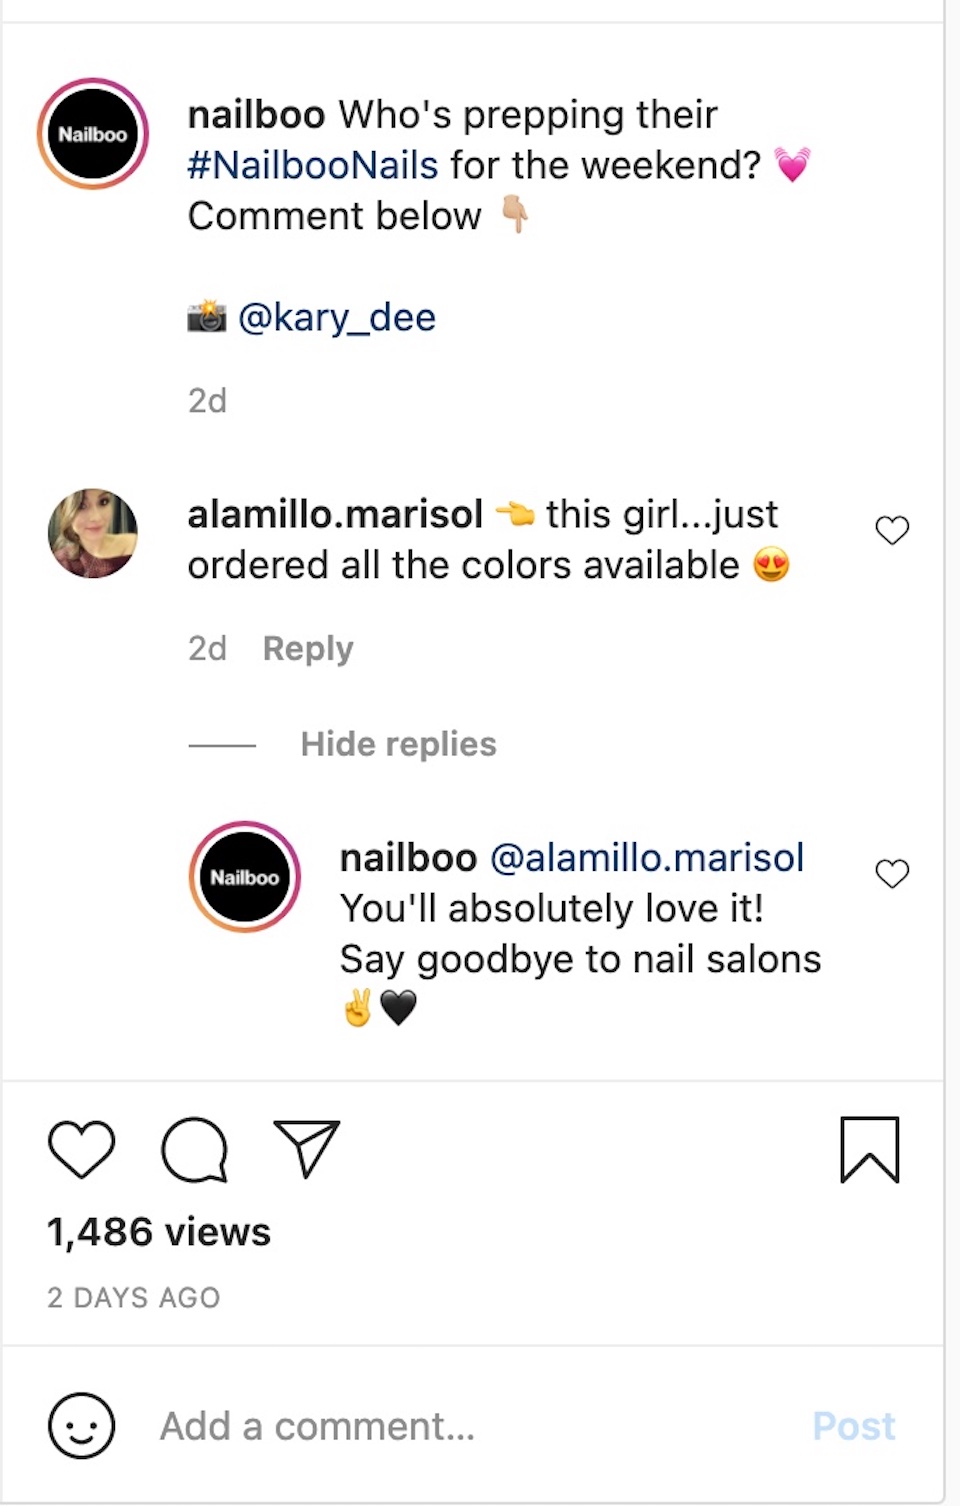 네일 제품 회사인 Nailboo가 Instagram 계정의 게시물에서 댓글 작성자와 상호 작용하는 모습이 표현되었습니다.